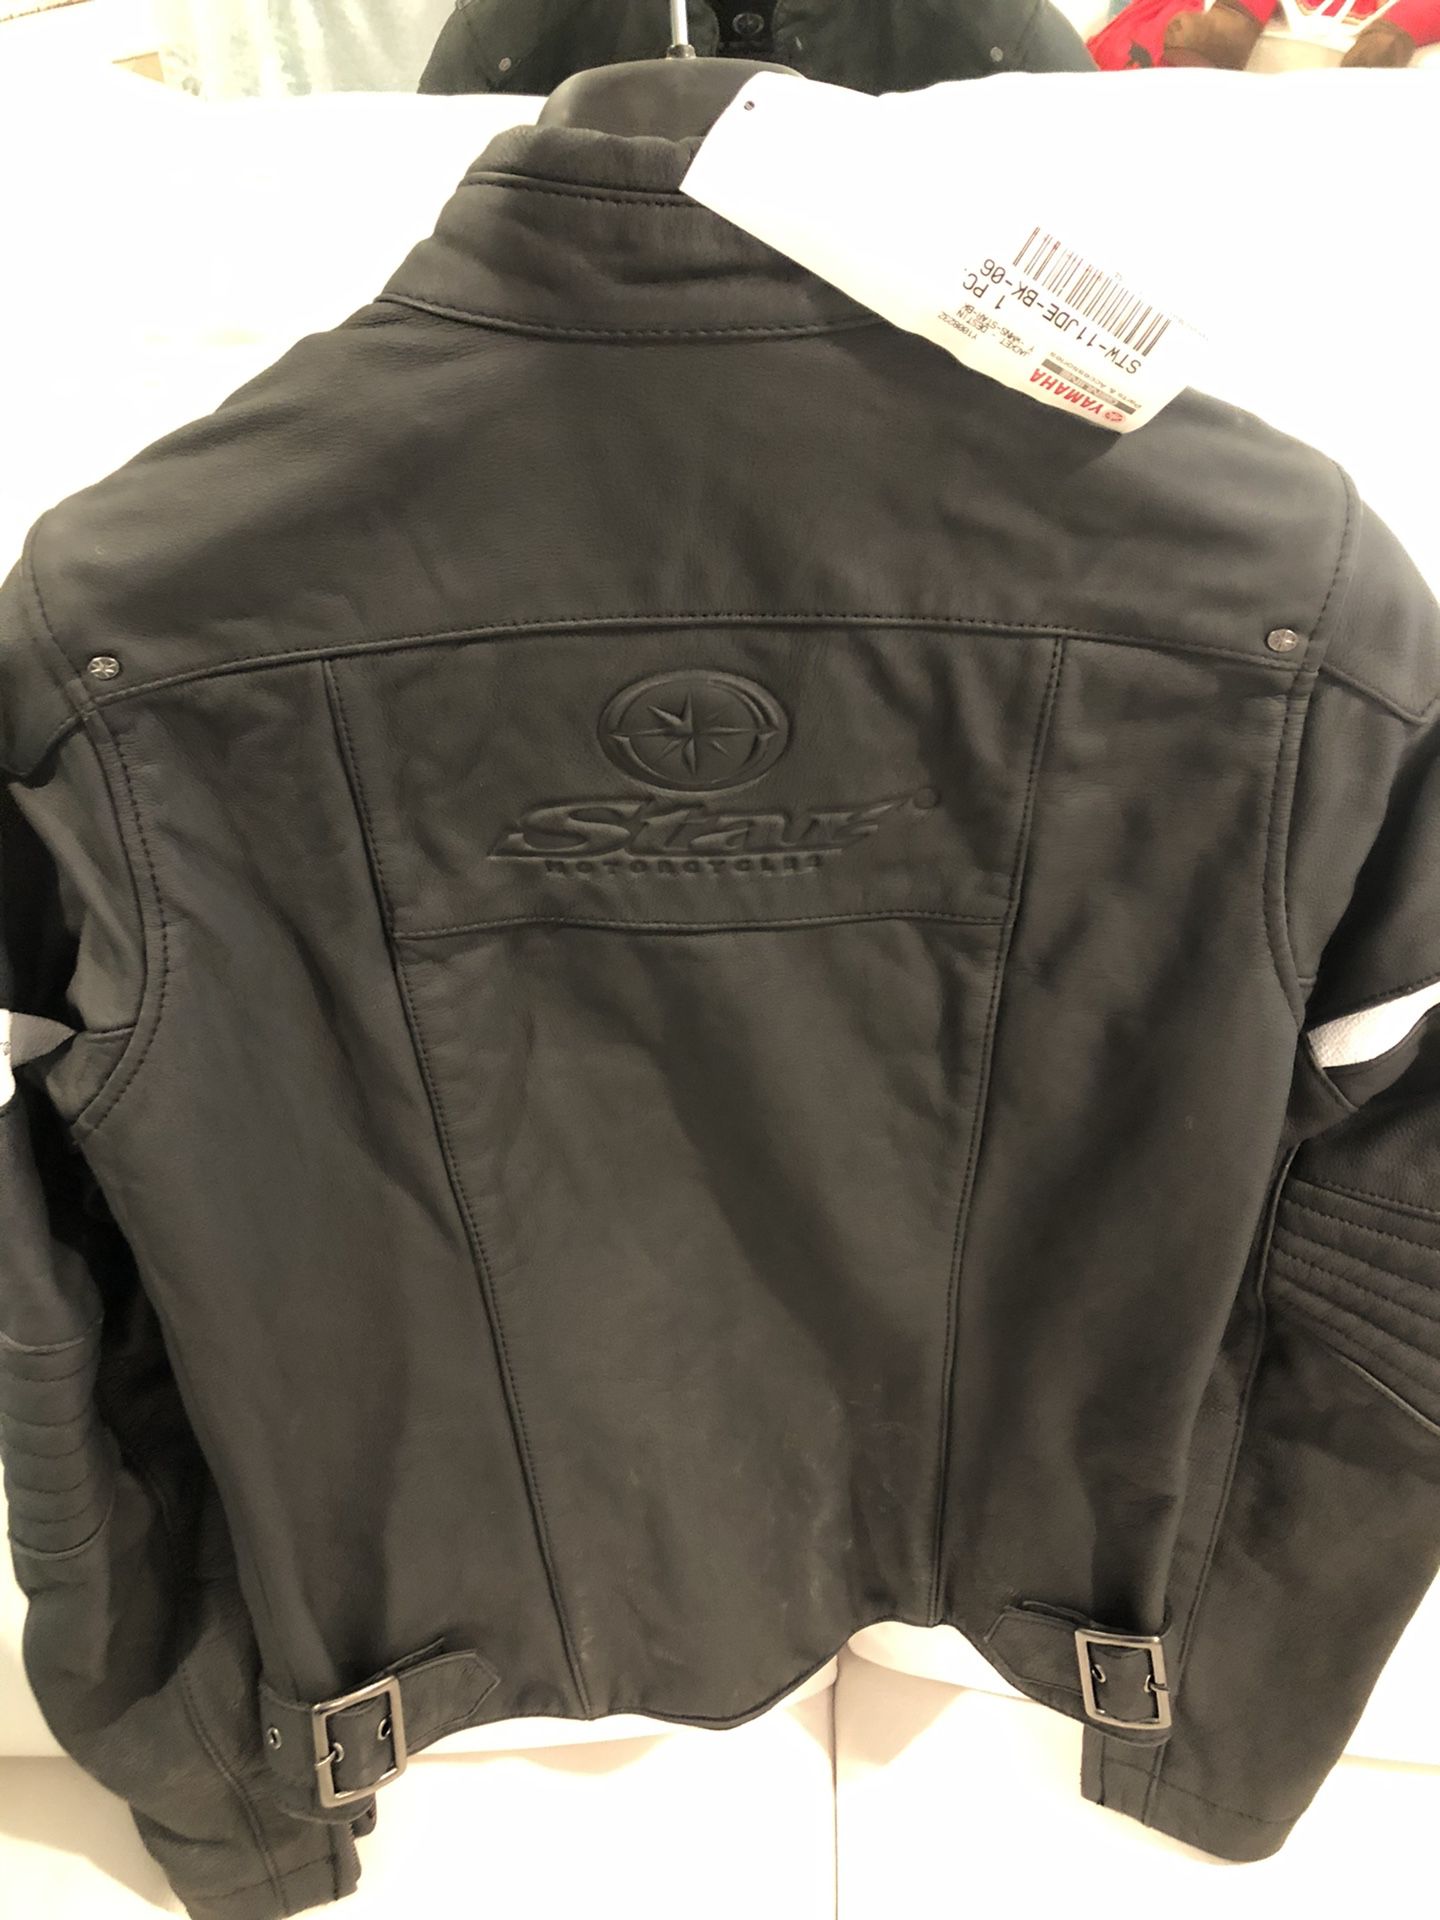 Ladies Yamaha destiny leather jacket